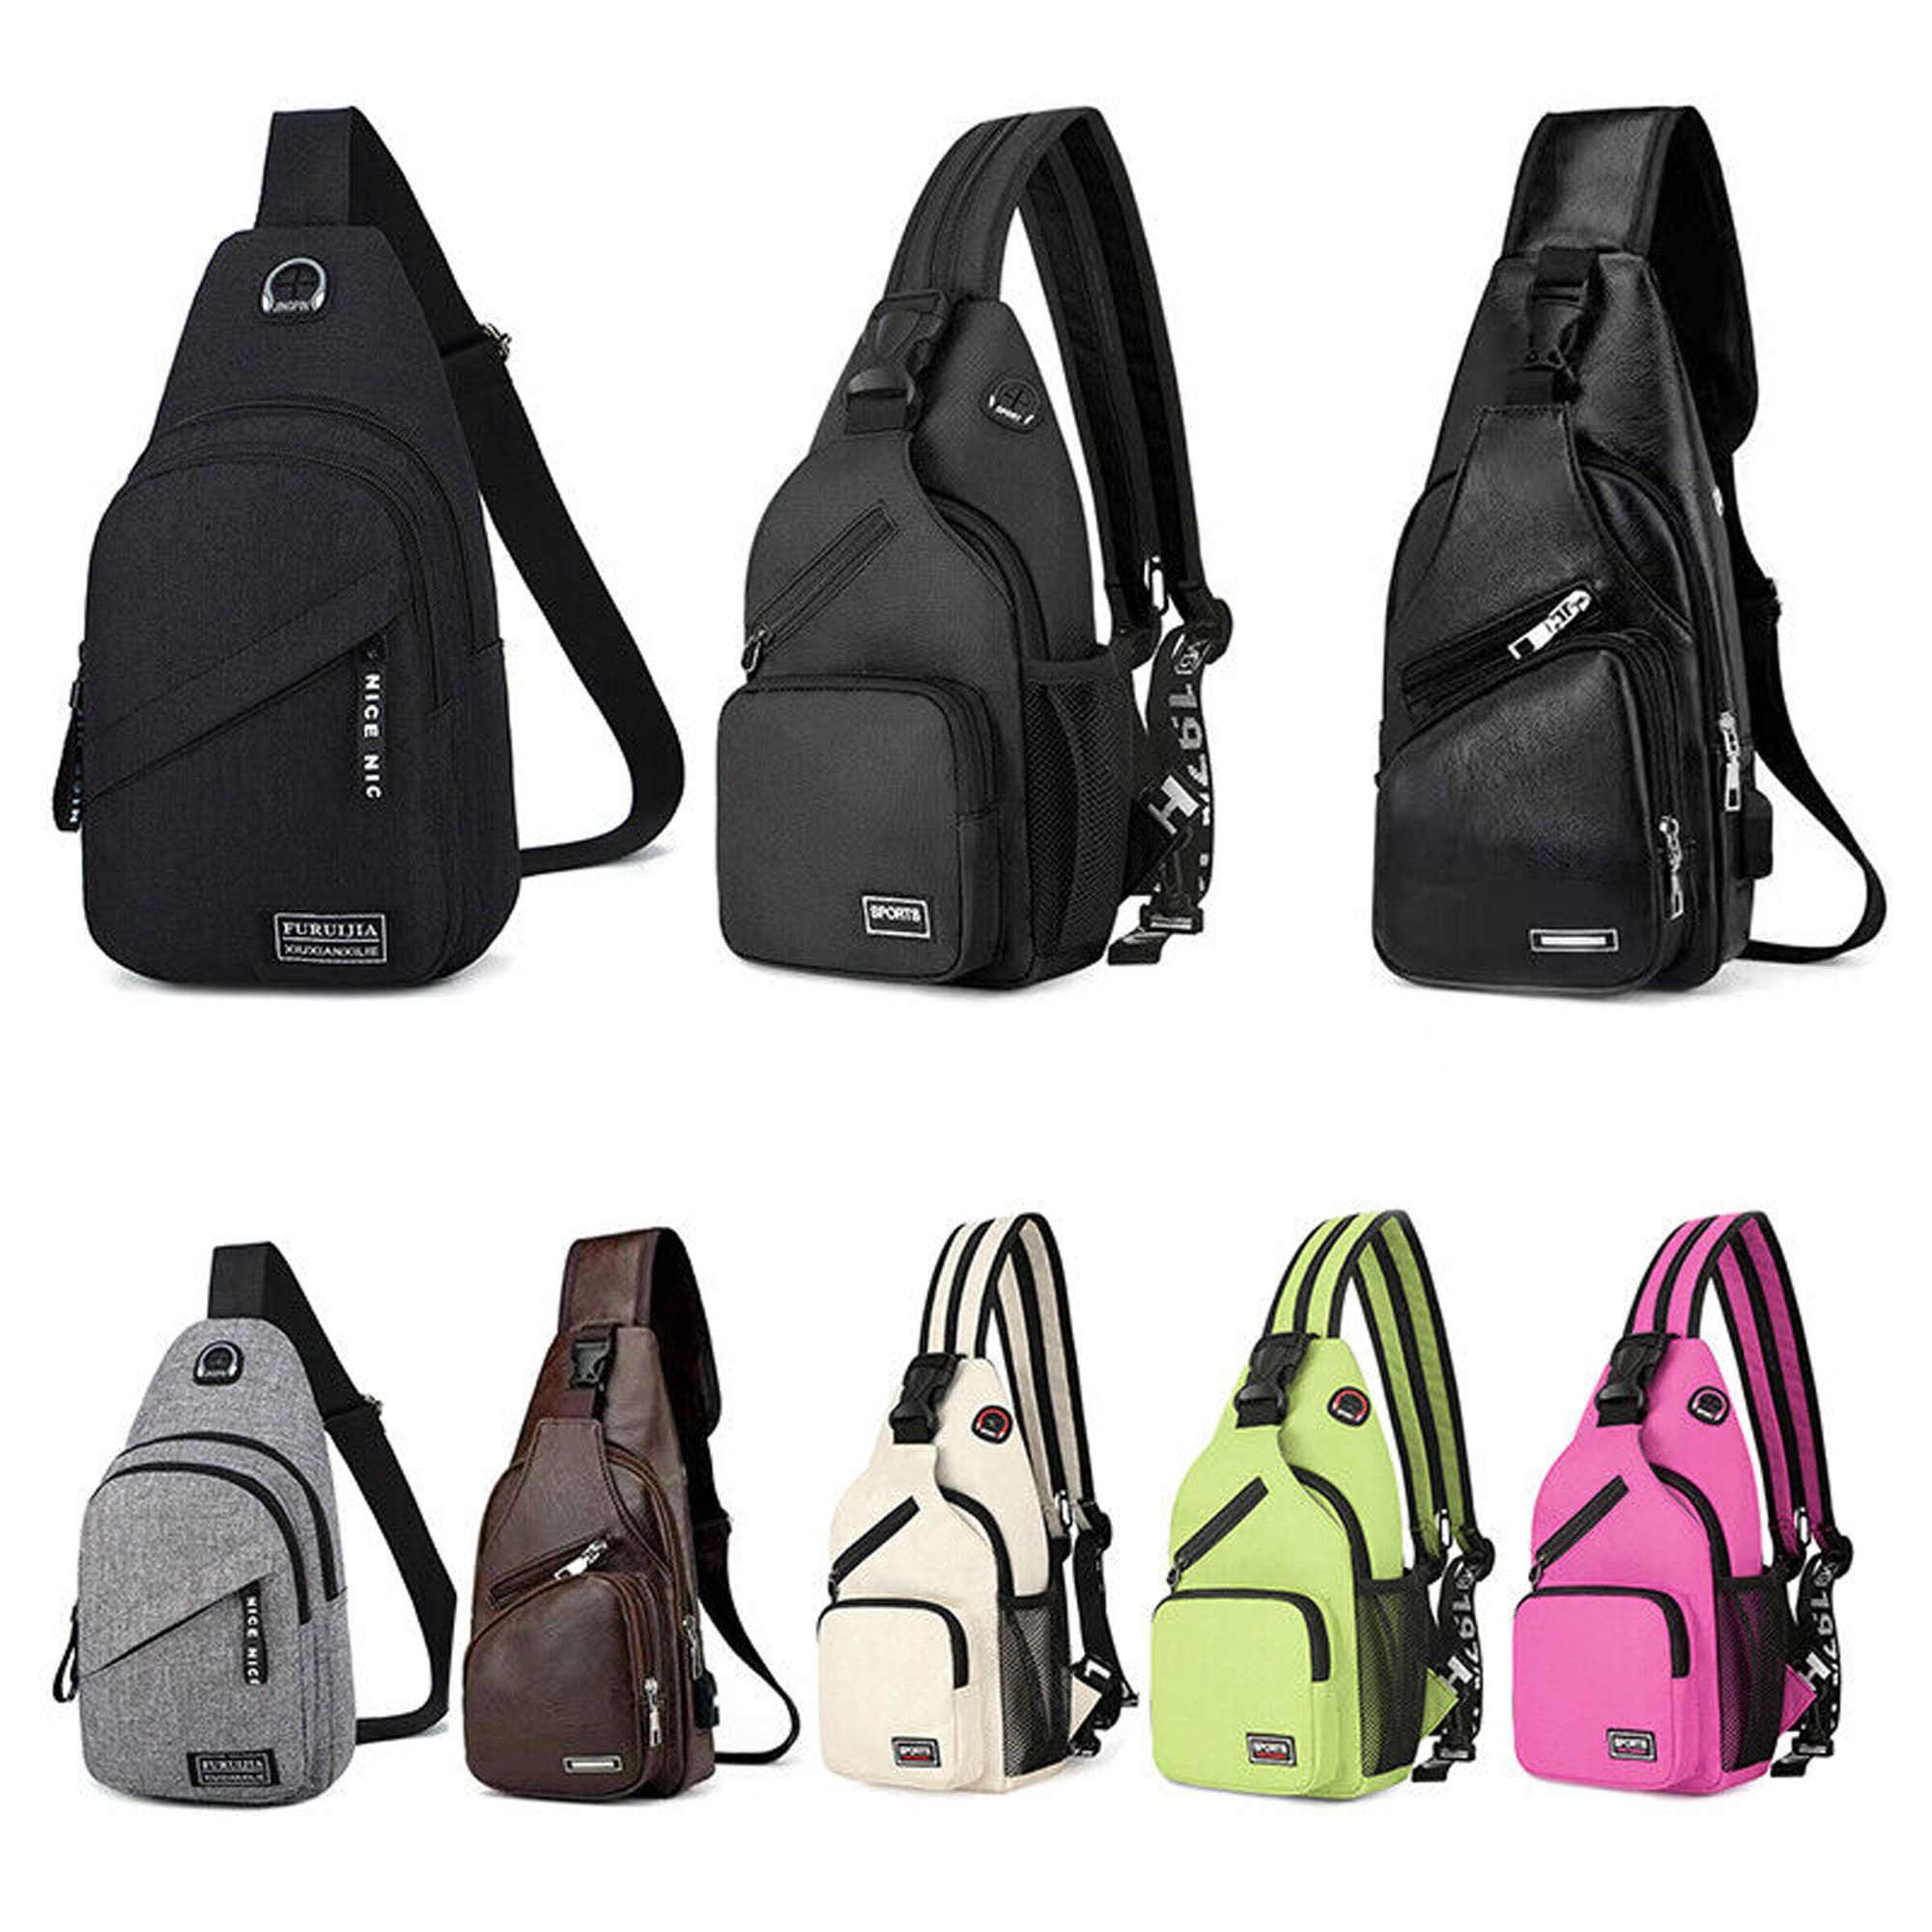 Singer L-ana Del Rey Sling Bag Crossbody Sling Backpack Travel Hiking Chest  Bag Daypack Purses Shoulder Bag: Handbags